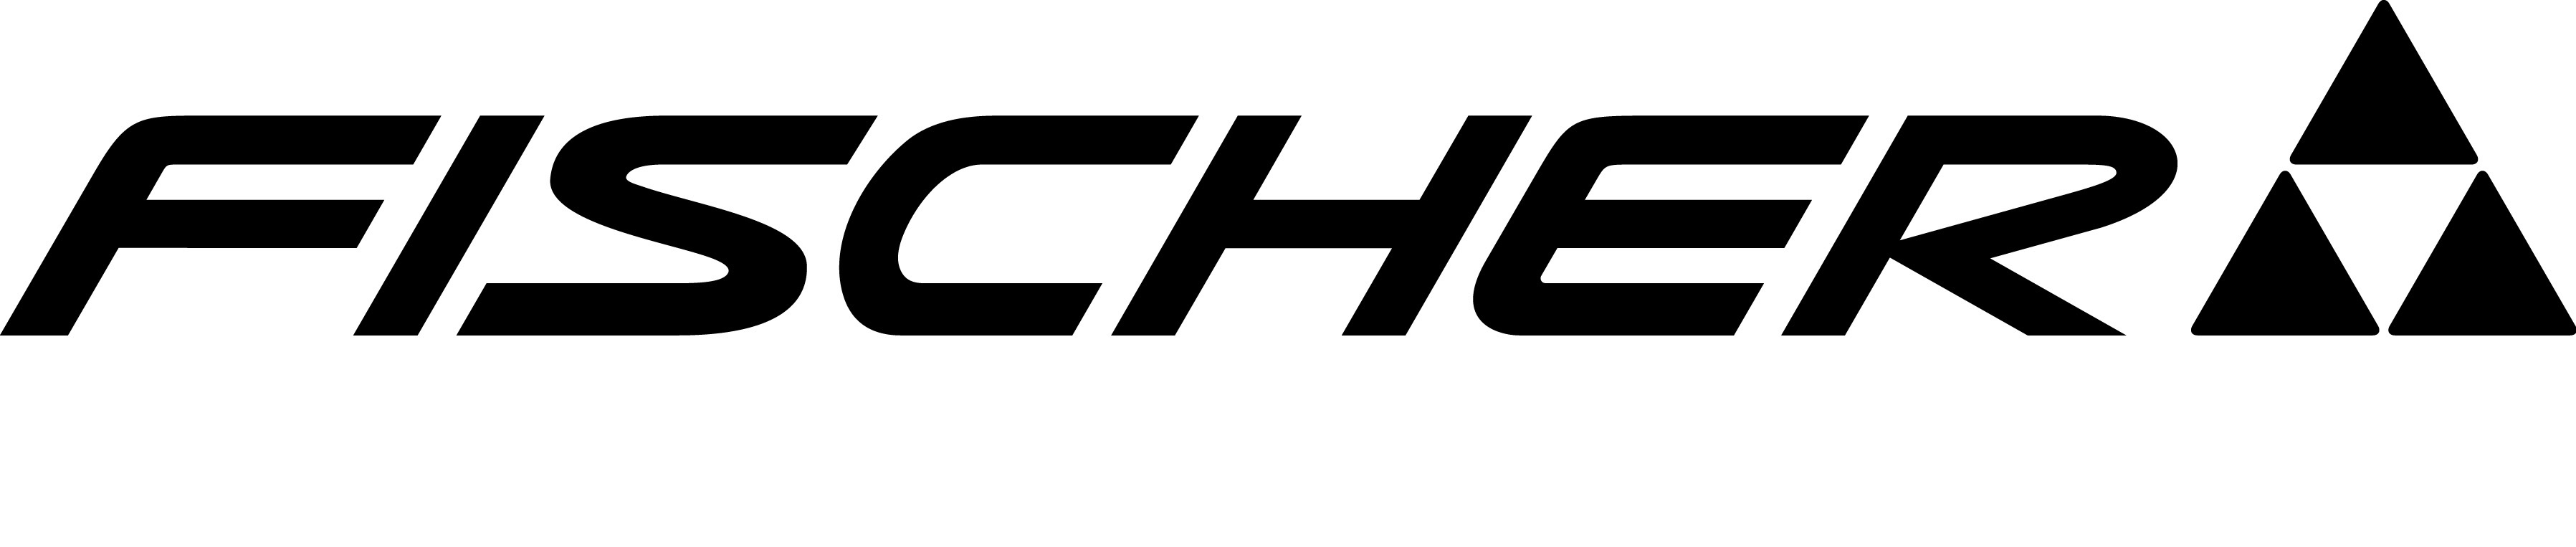 fischer-logo